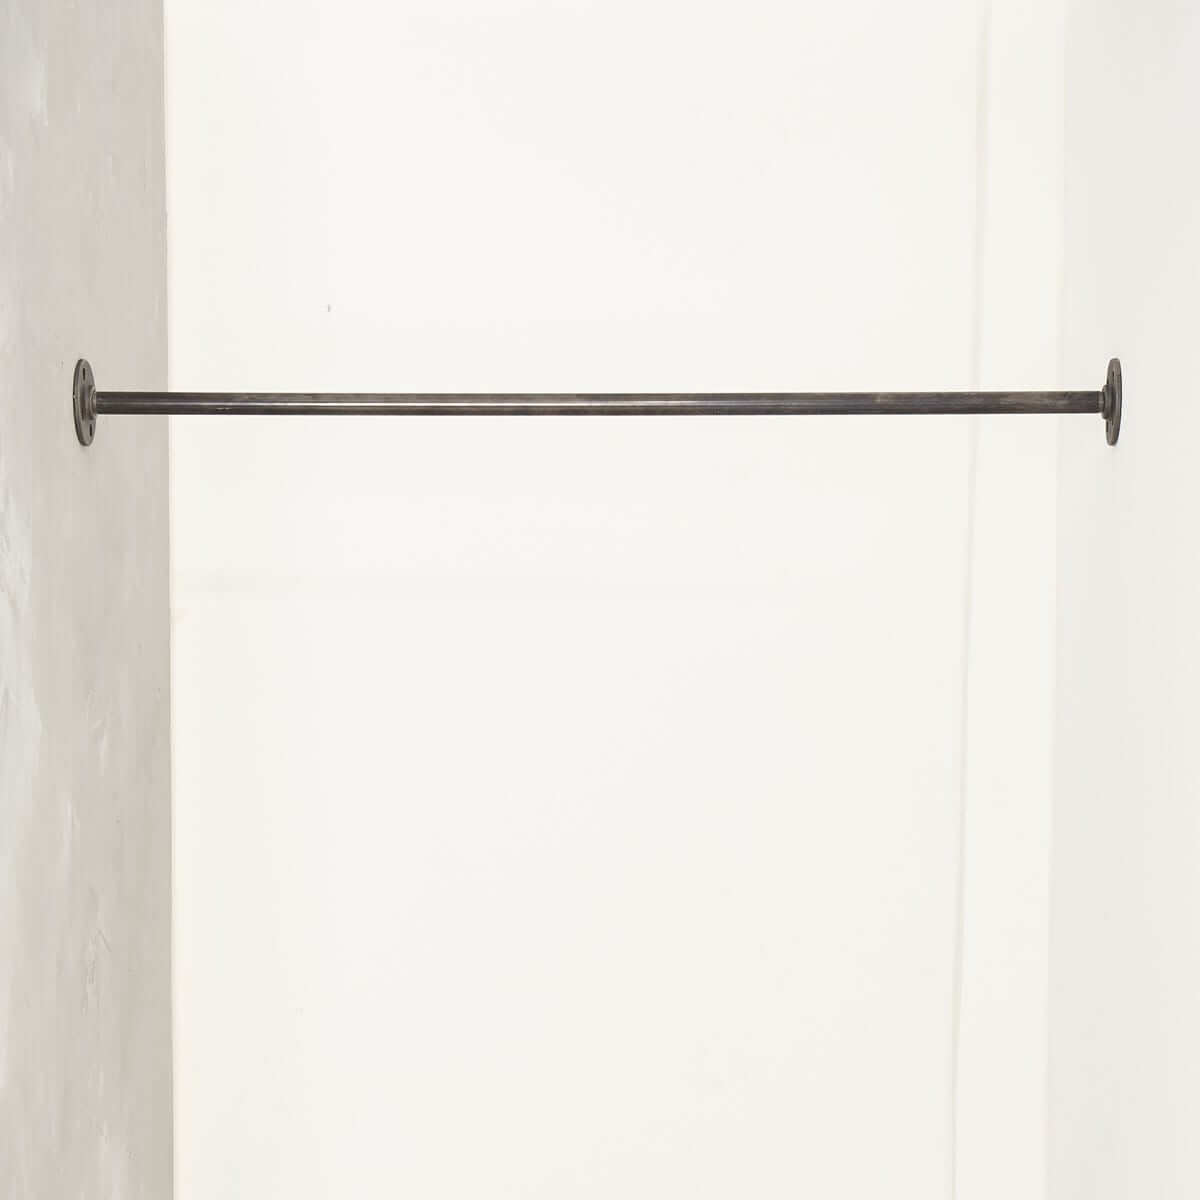 Kleiderstange Industrial Design zwischen Wand Wänden in Wunschgröße auf Maß aus Wasserrohr Temperguss schwarz